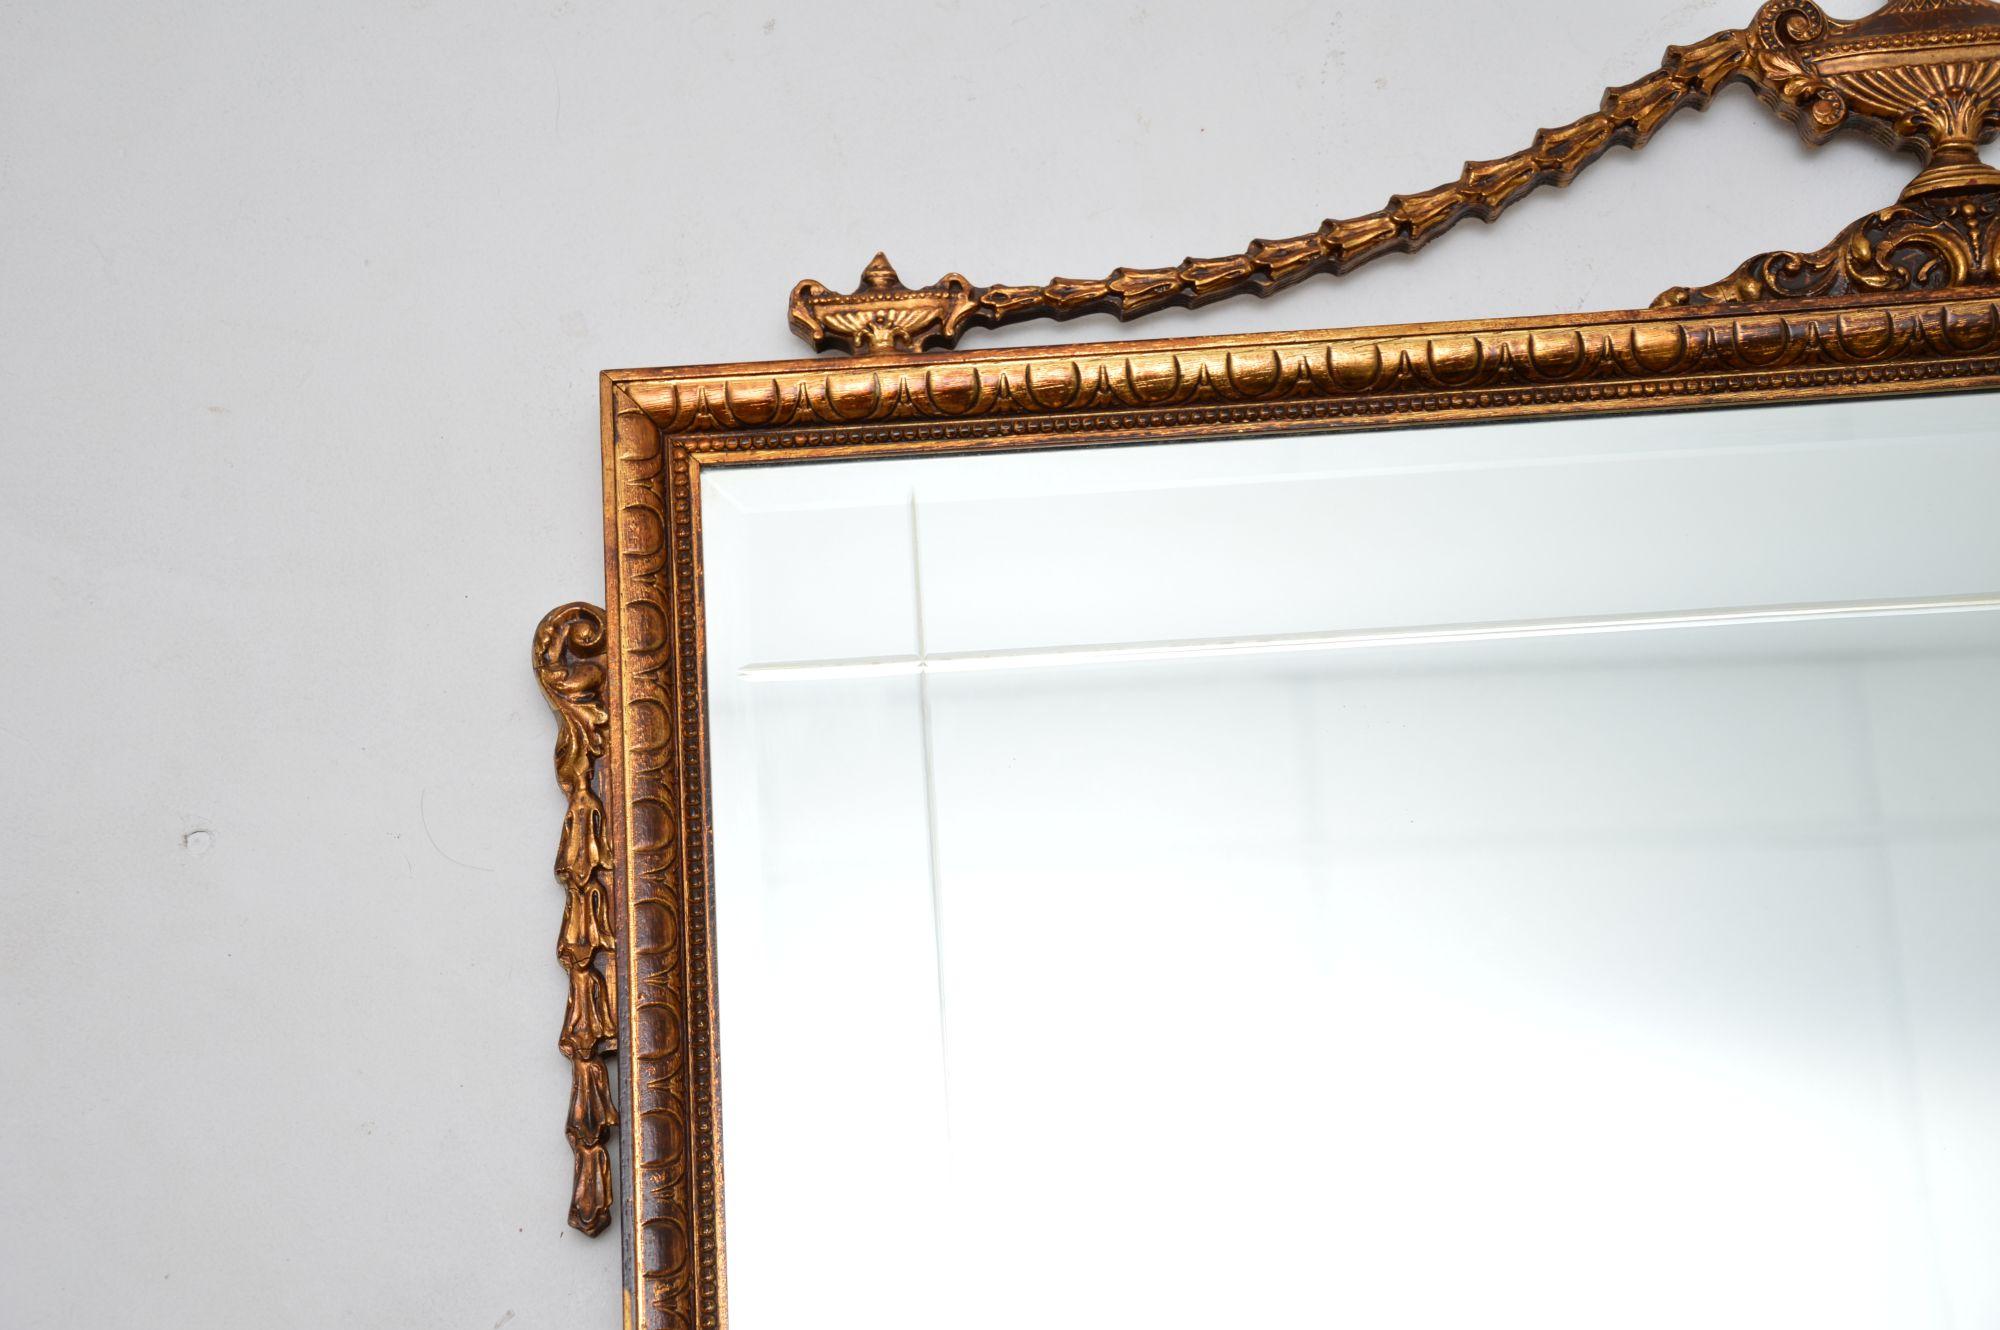 Très beau miroir ancien en bois doré de style Adams. Il a été fabriqué en Angleterre, il date des années 1950 environ.

Il est d'une qualité exceptionnelle, avec de beaux détails partout. Le verre est biseauté avec des bordures gravées, le cadre en